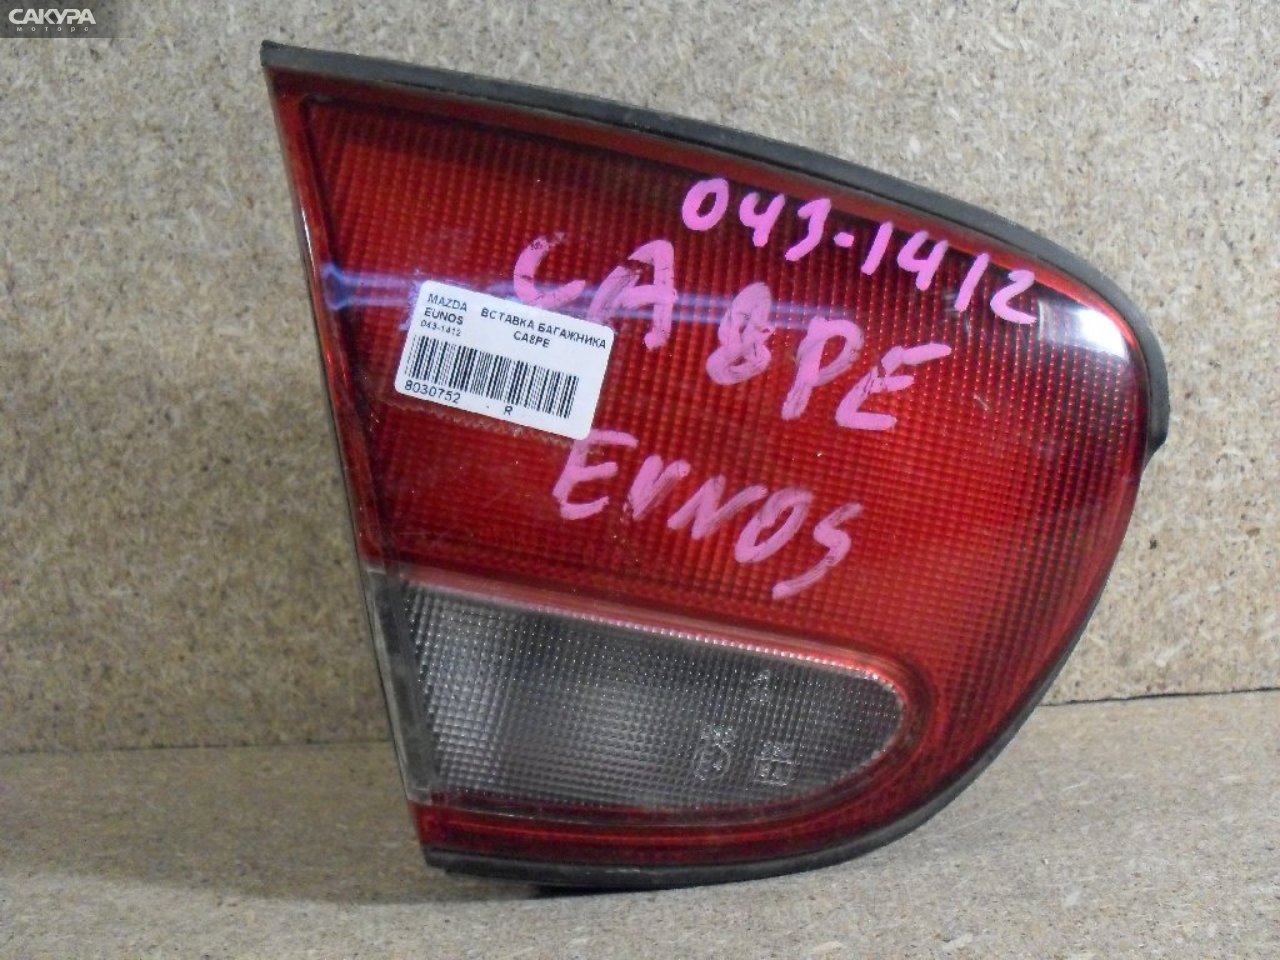 Фонарь вставка багажника левый Mazda Eunos 500 CA8PE 043-1413: купить в Сакура Абакан.